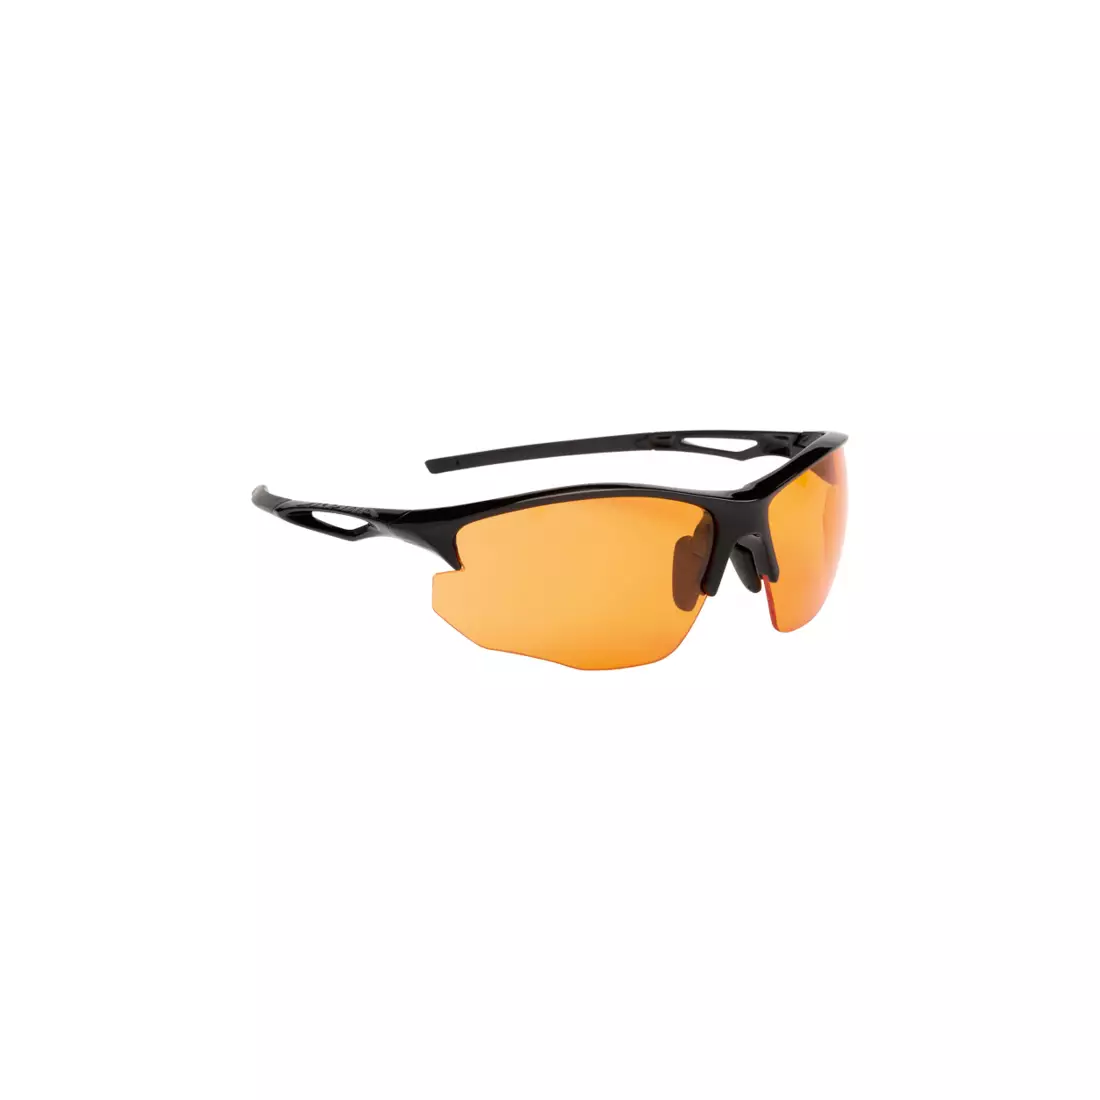 Športové okuliare ALPINA - SORCERY HR C+, matné čierne / oranžové sklá zahmlievania.